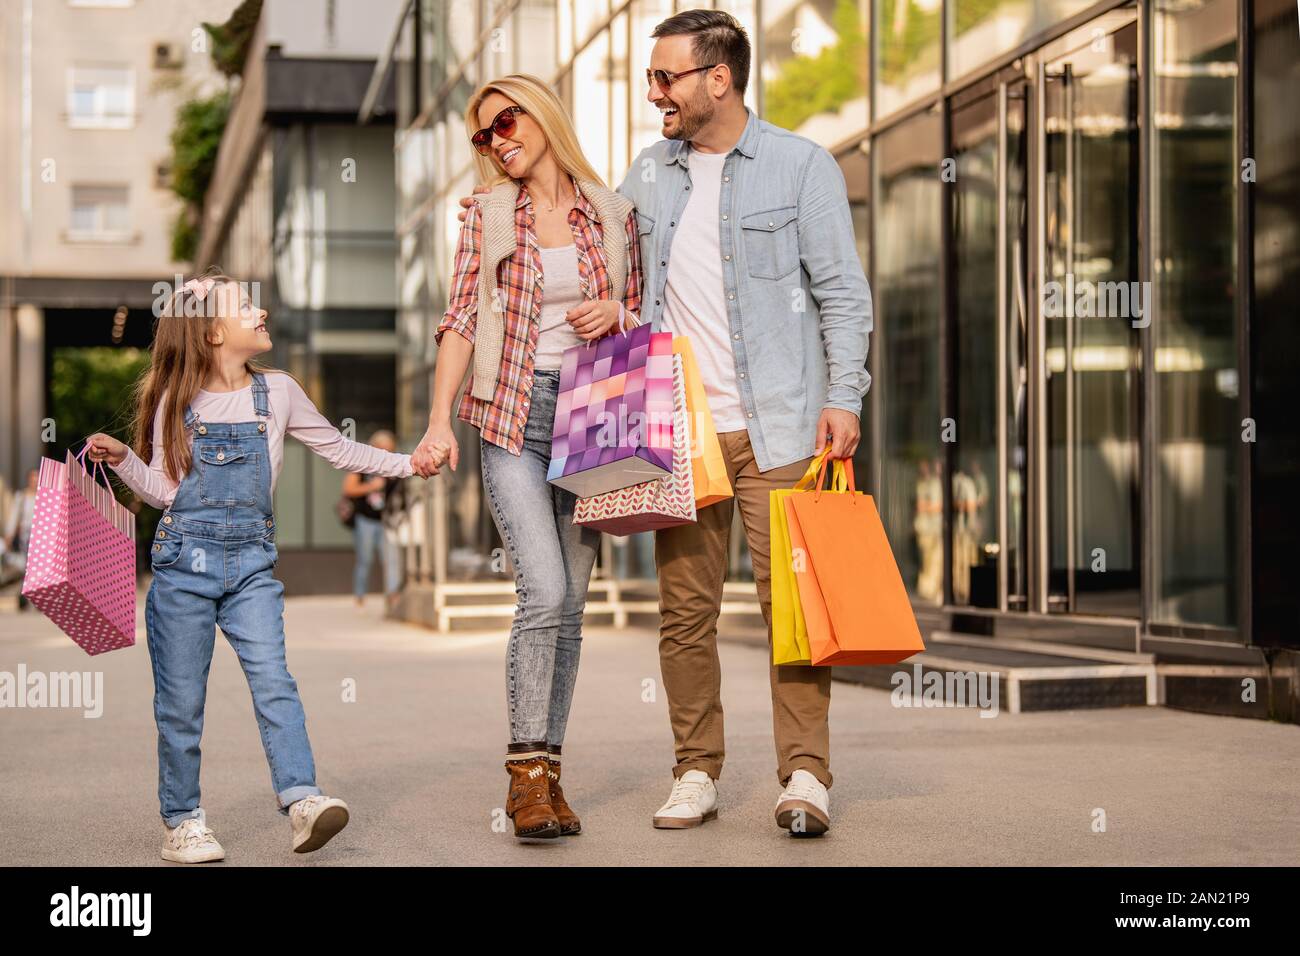 Happy Family avec petite fille profiter après le magasinage.People,bonheur,amour et le consumérisme concept. Banque D'Images